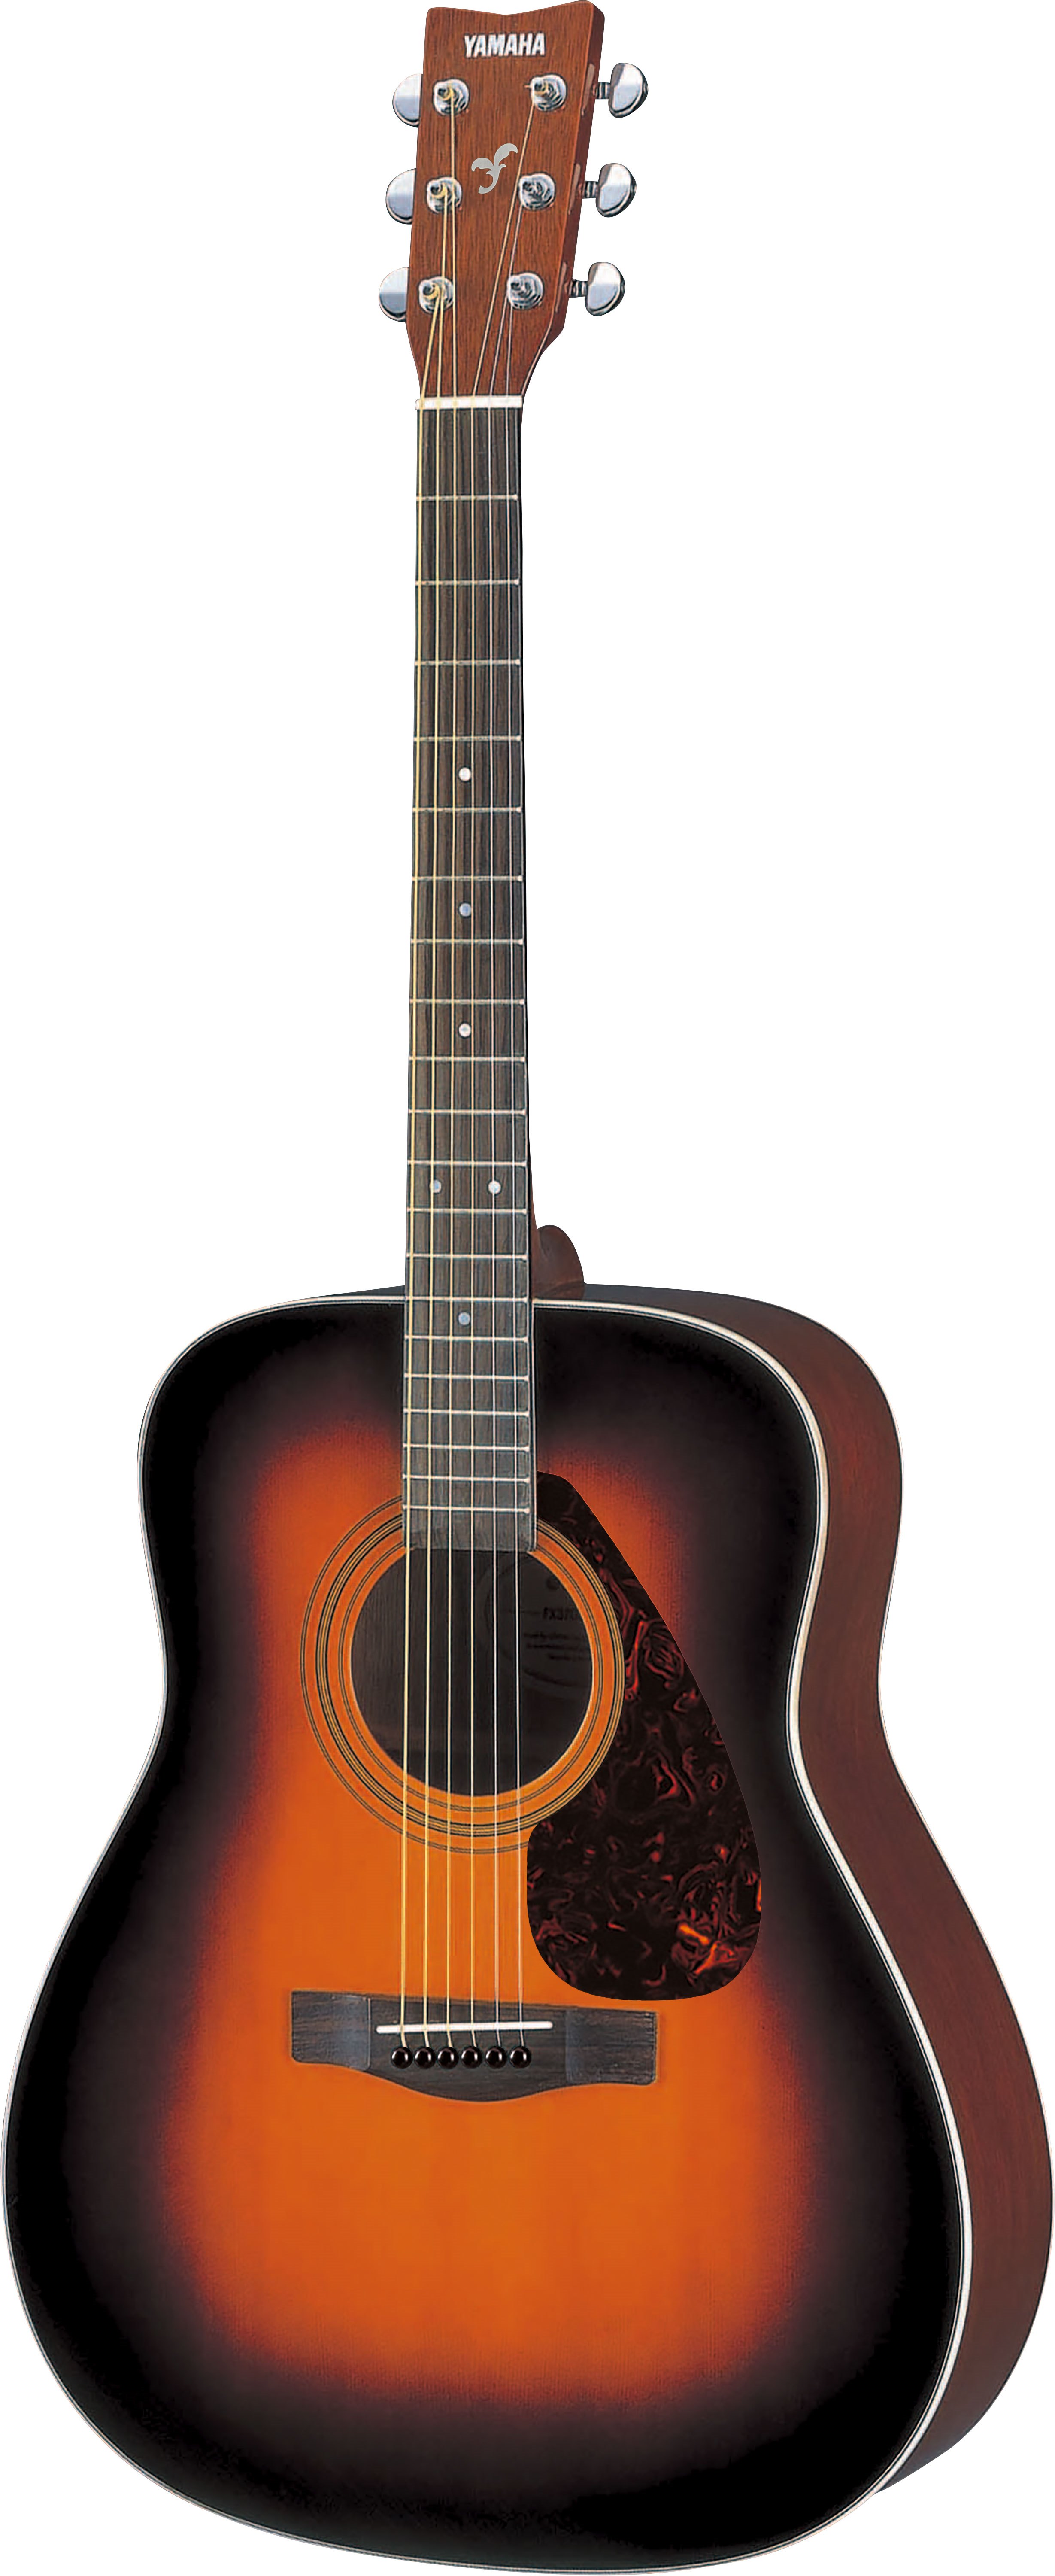 【新品安い】アコースティックギター アコギ YAMAHA F370 ケース ギター